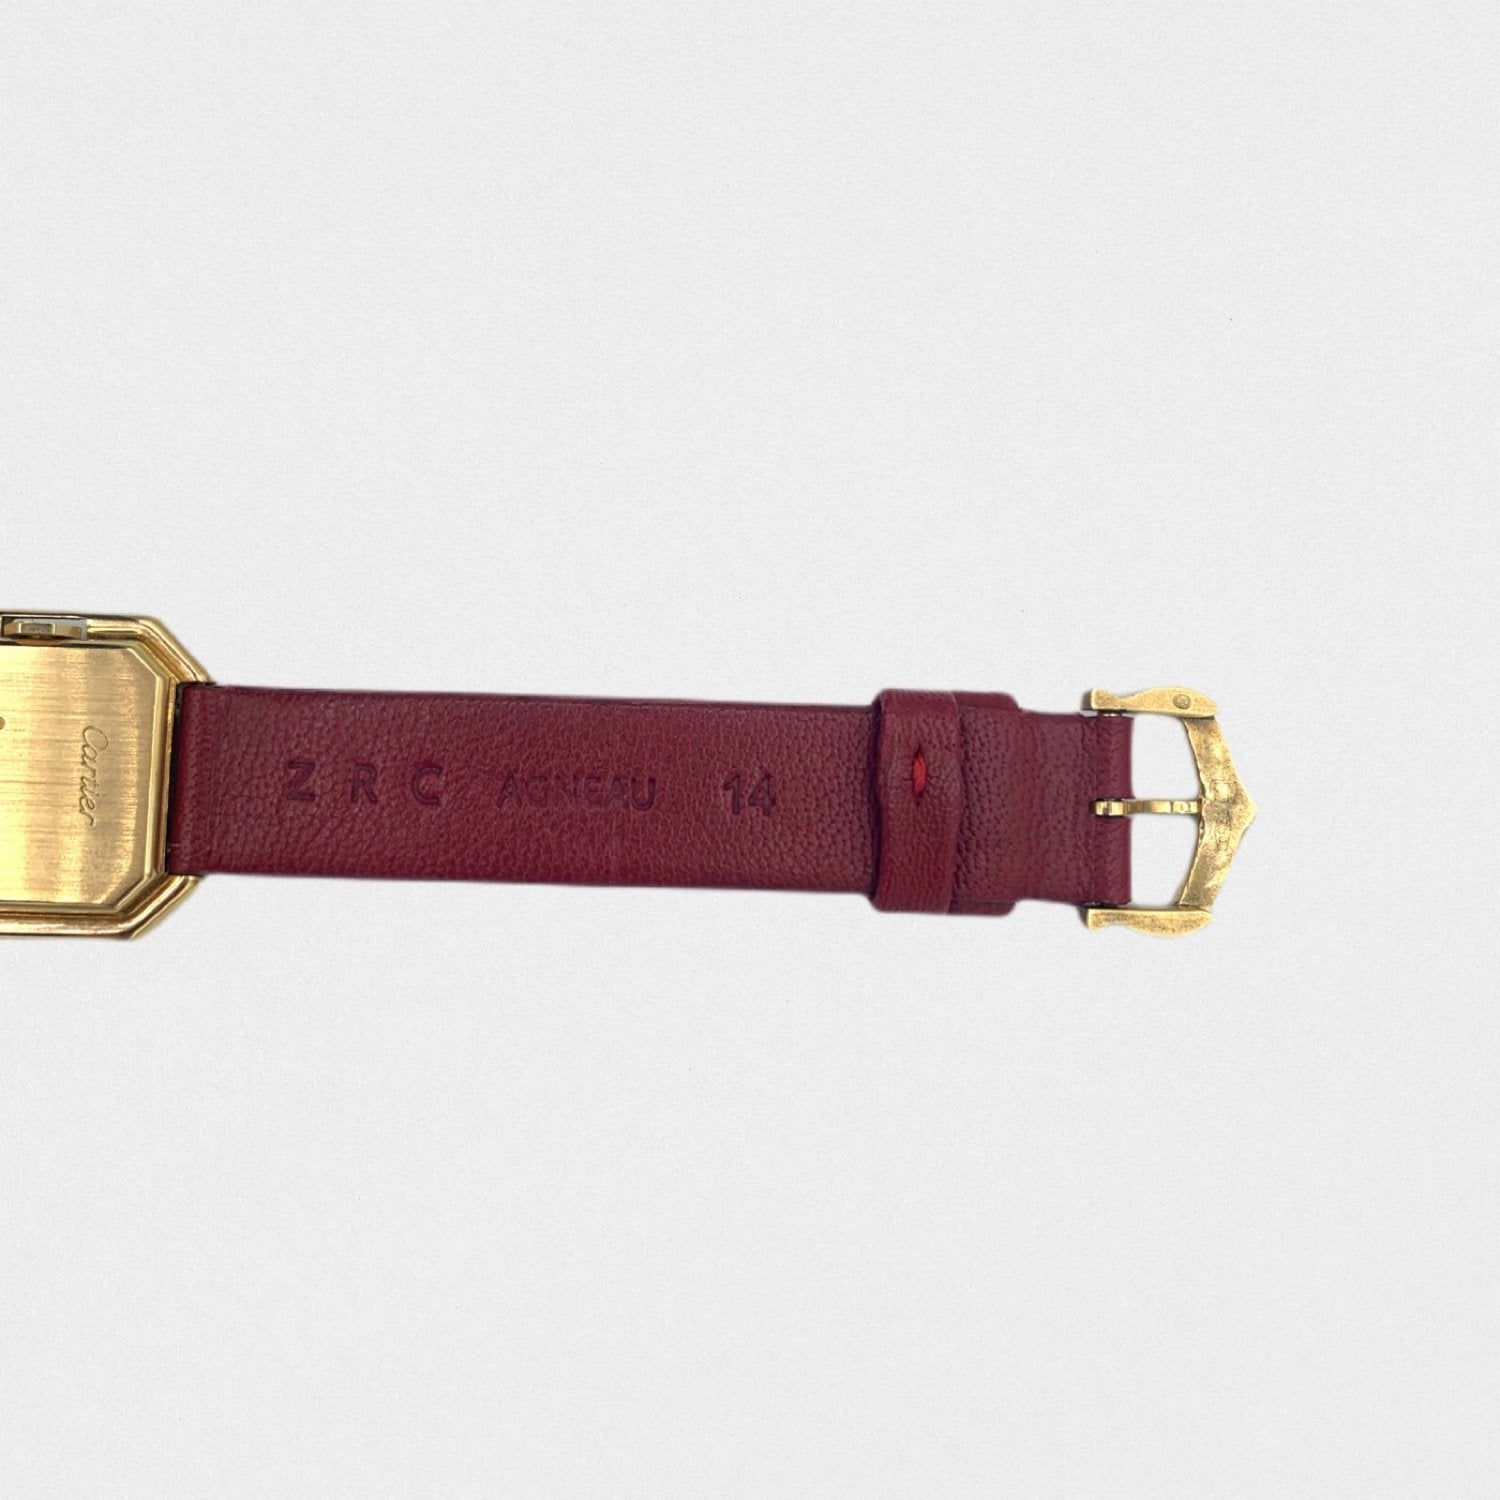 Lysis vintage Cartier Ceinture watch